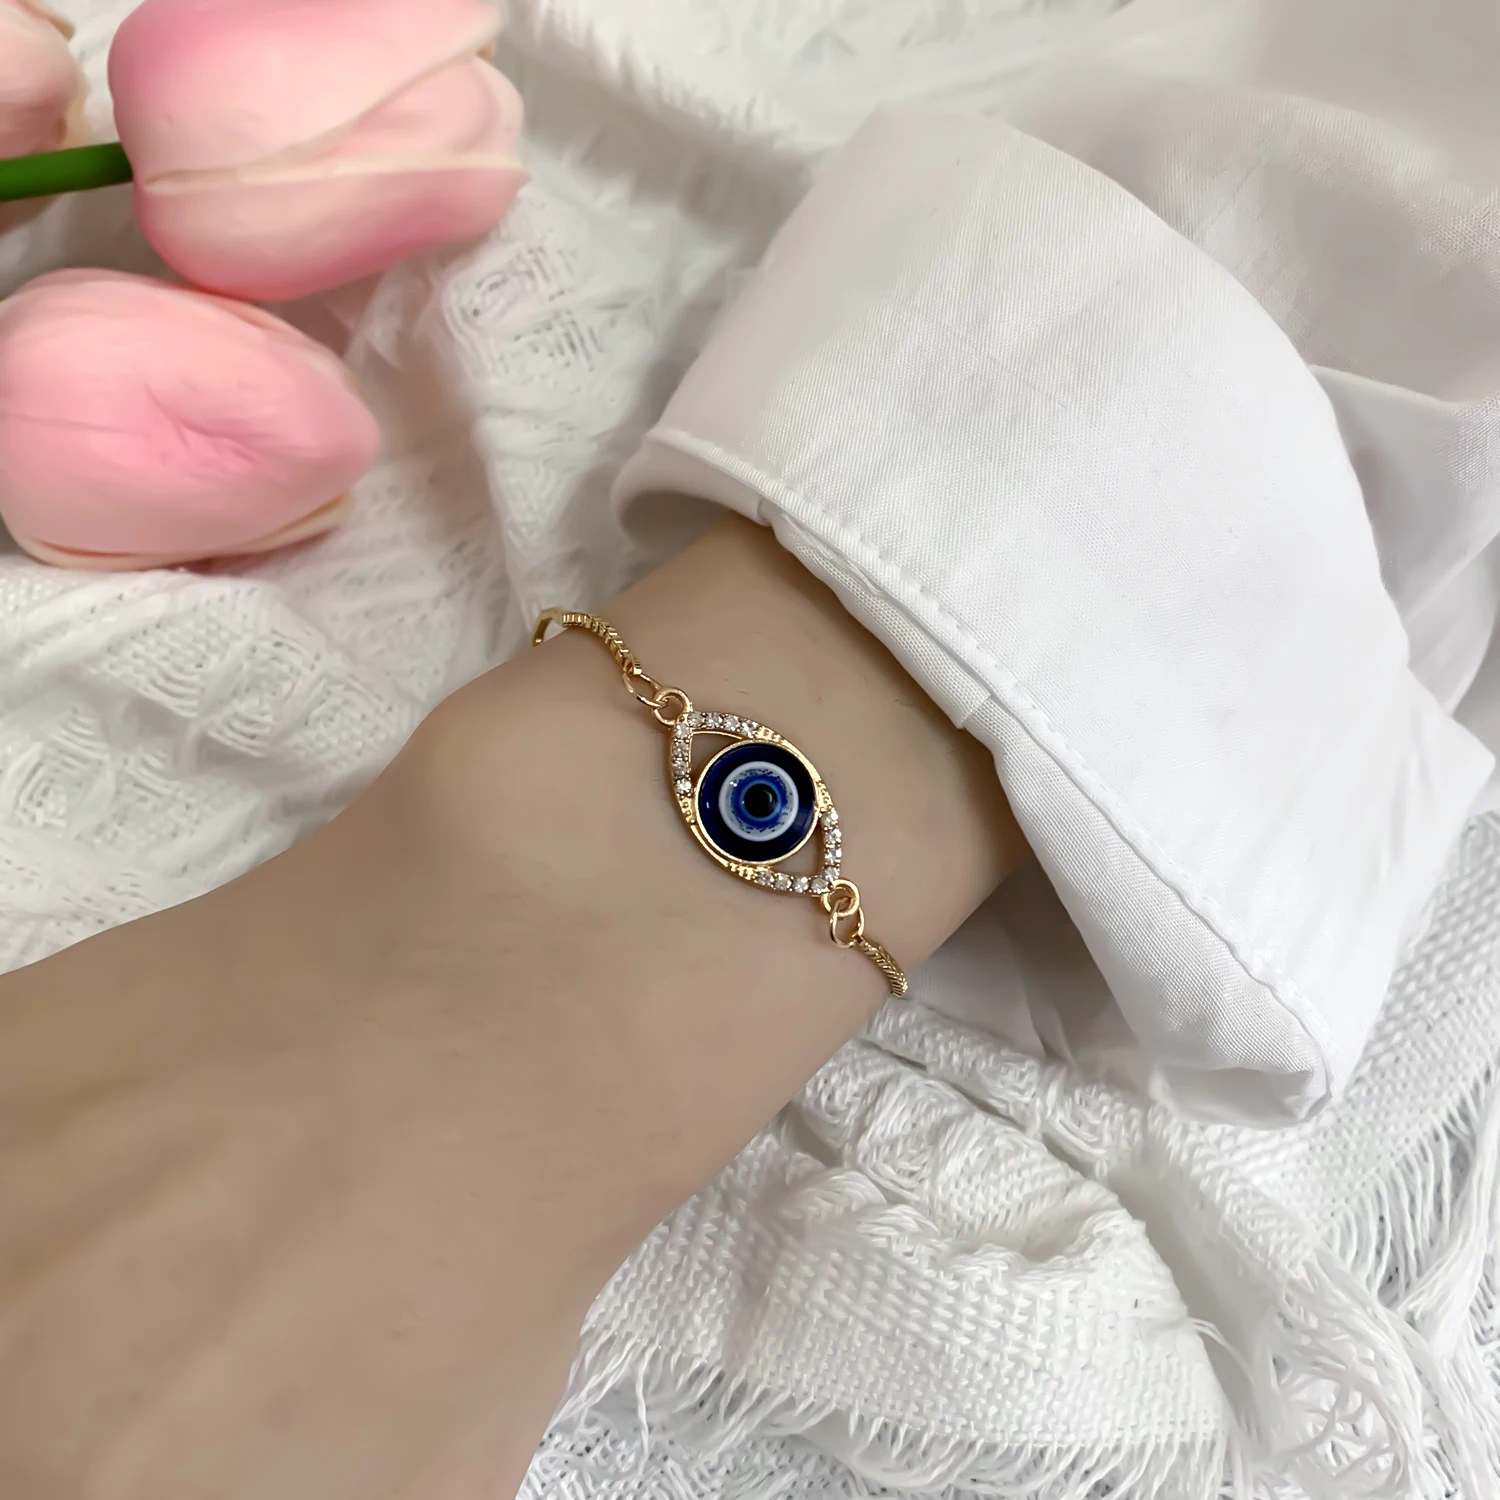 Gold and Diamond Lucky Evil Eye Bracelet, Handmade